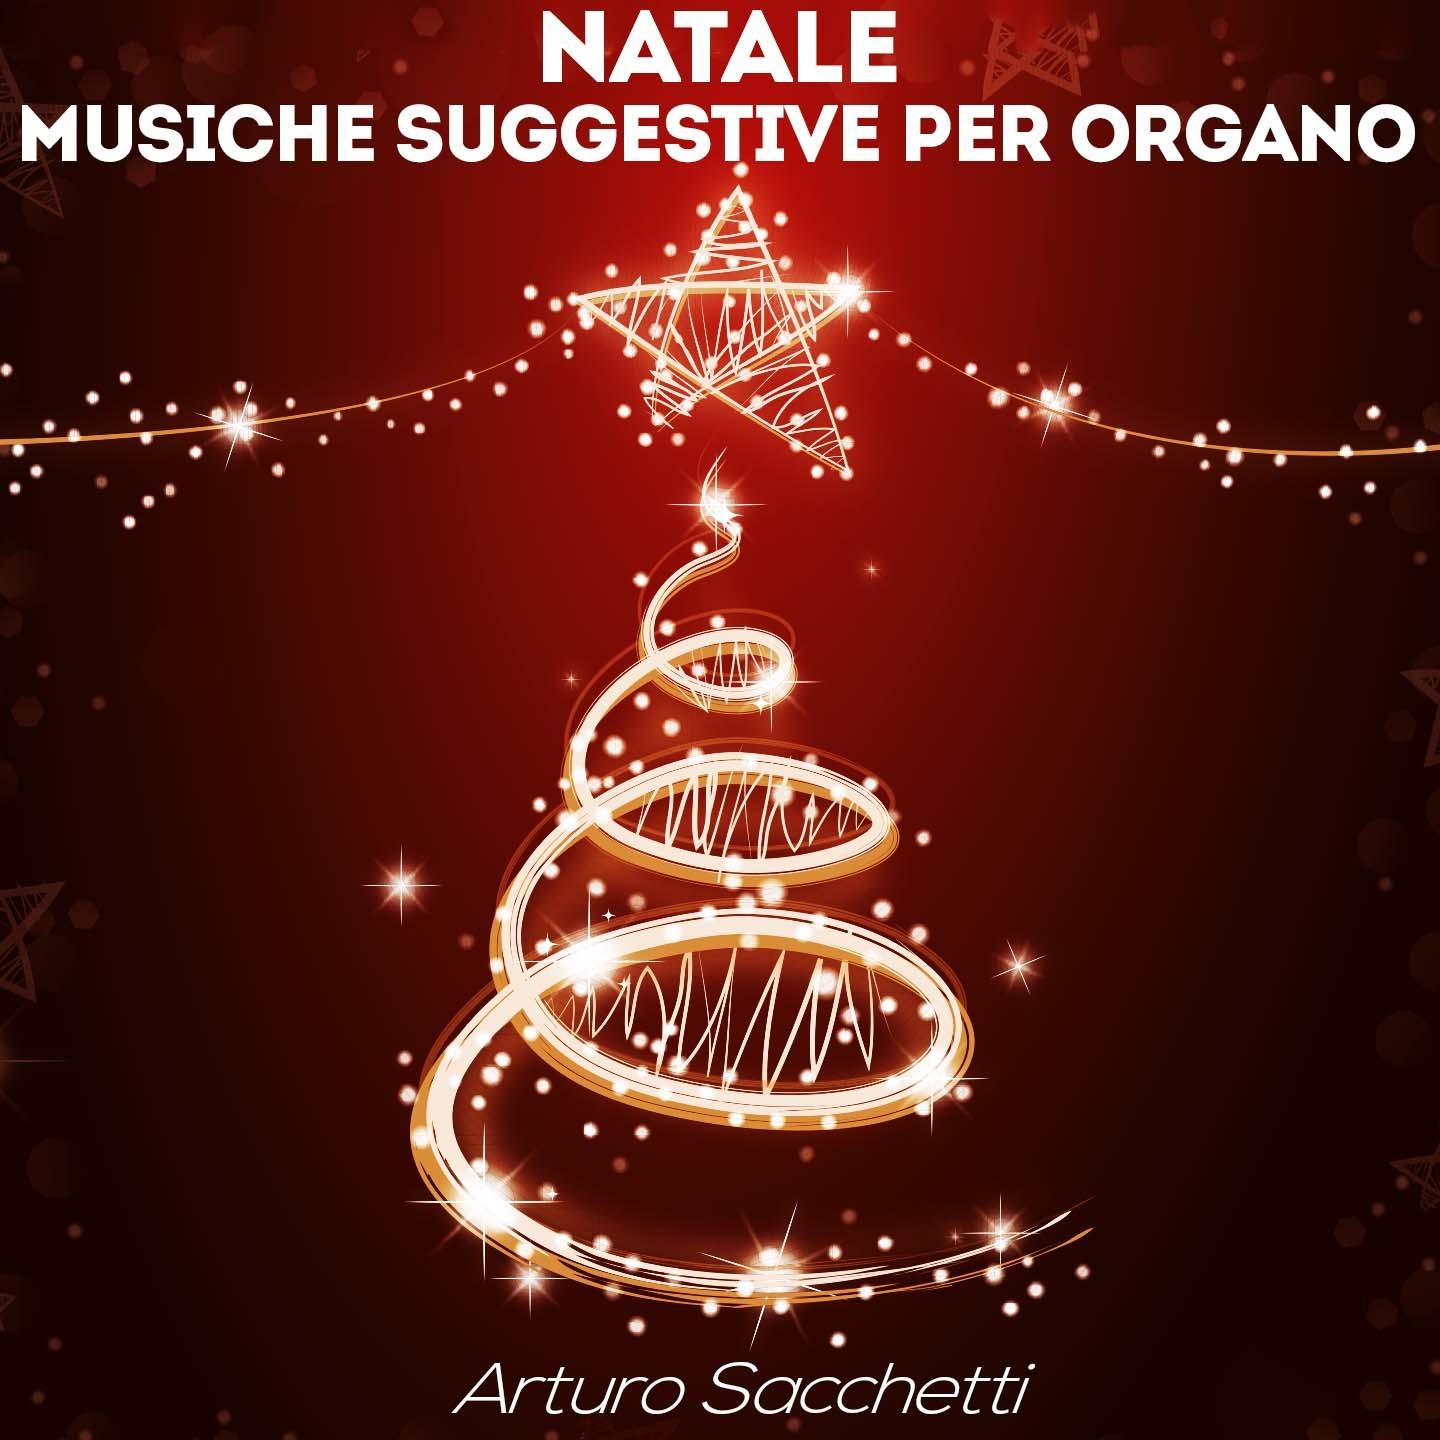 Arturo Sacchetti - Offertorio sul Noel 